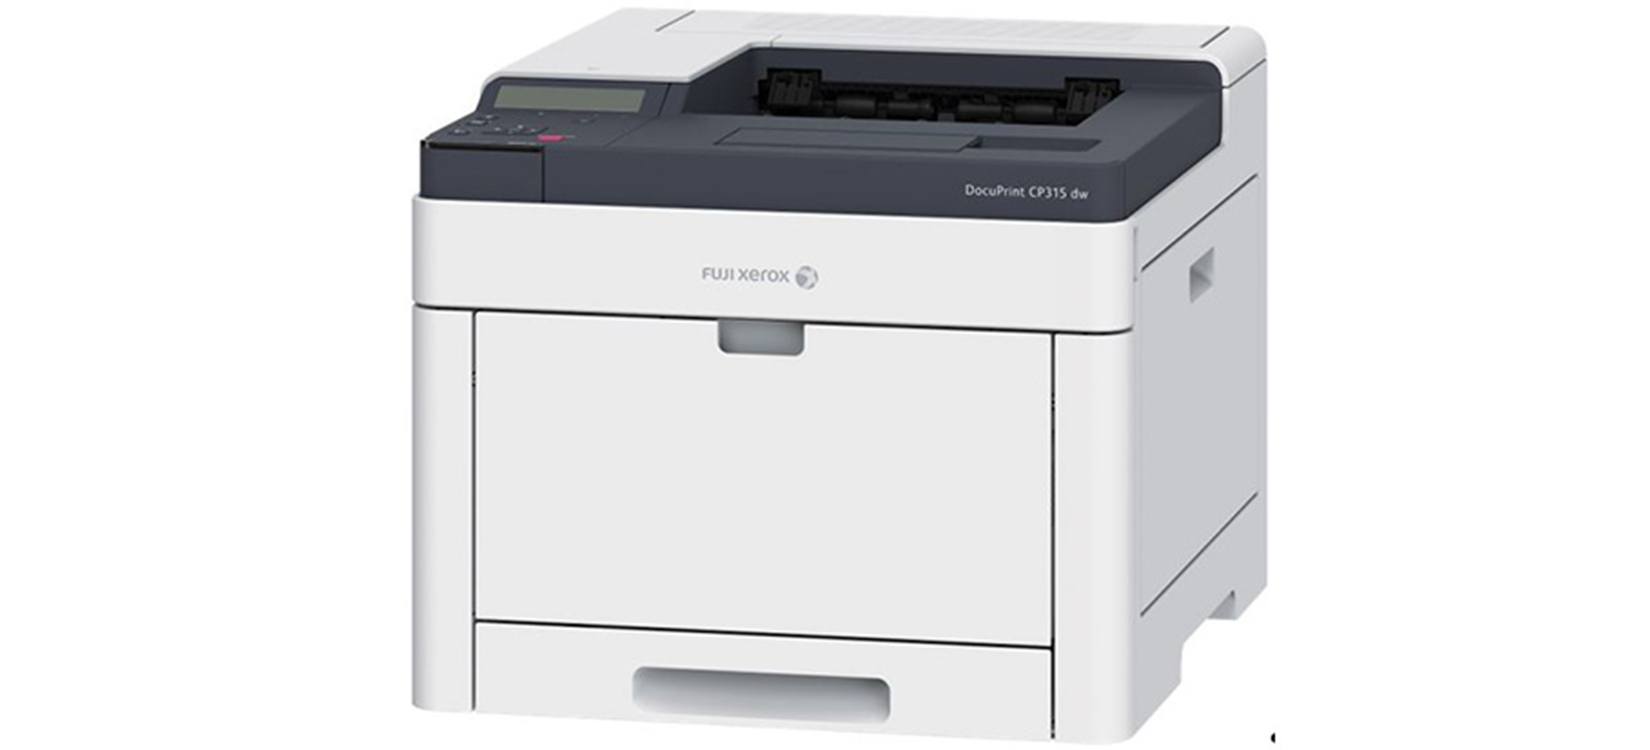 Máy in Fuji Xerox DocuPrint CP315 dw